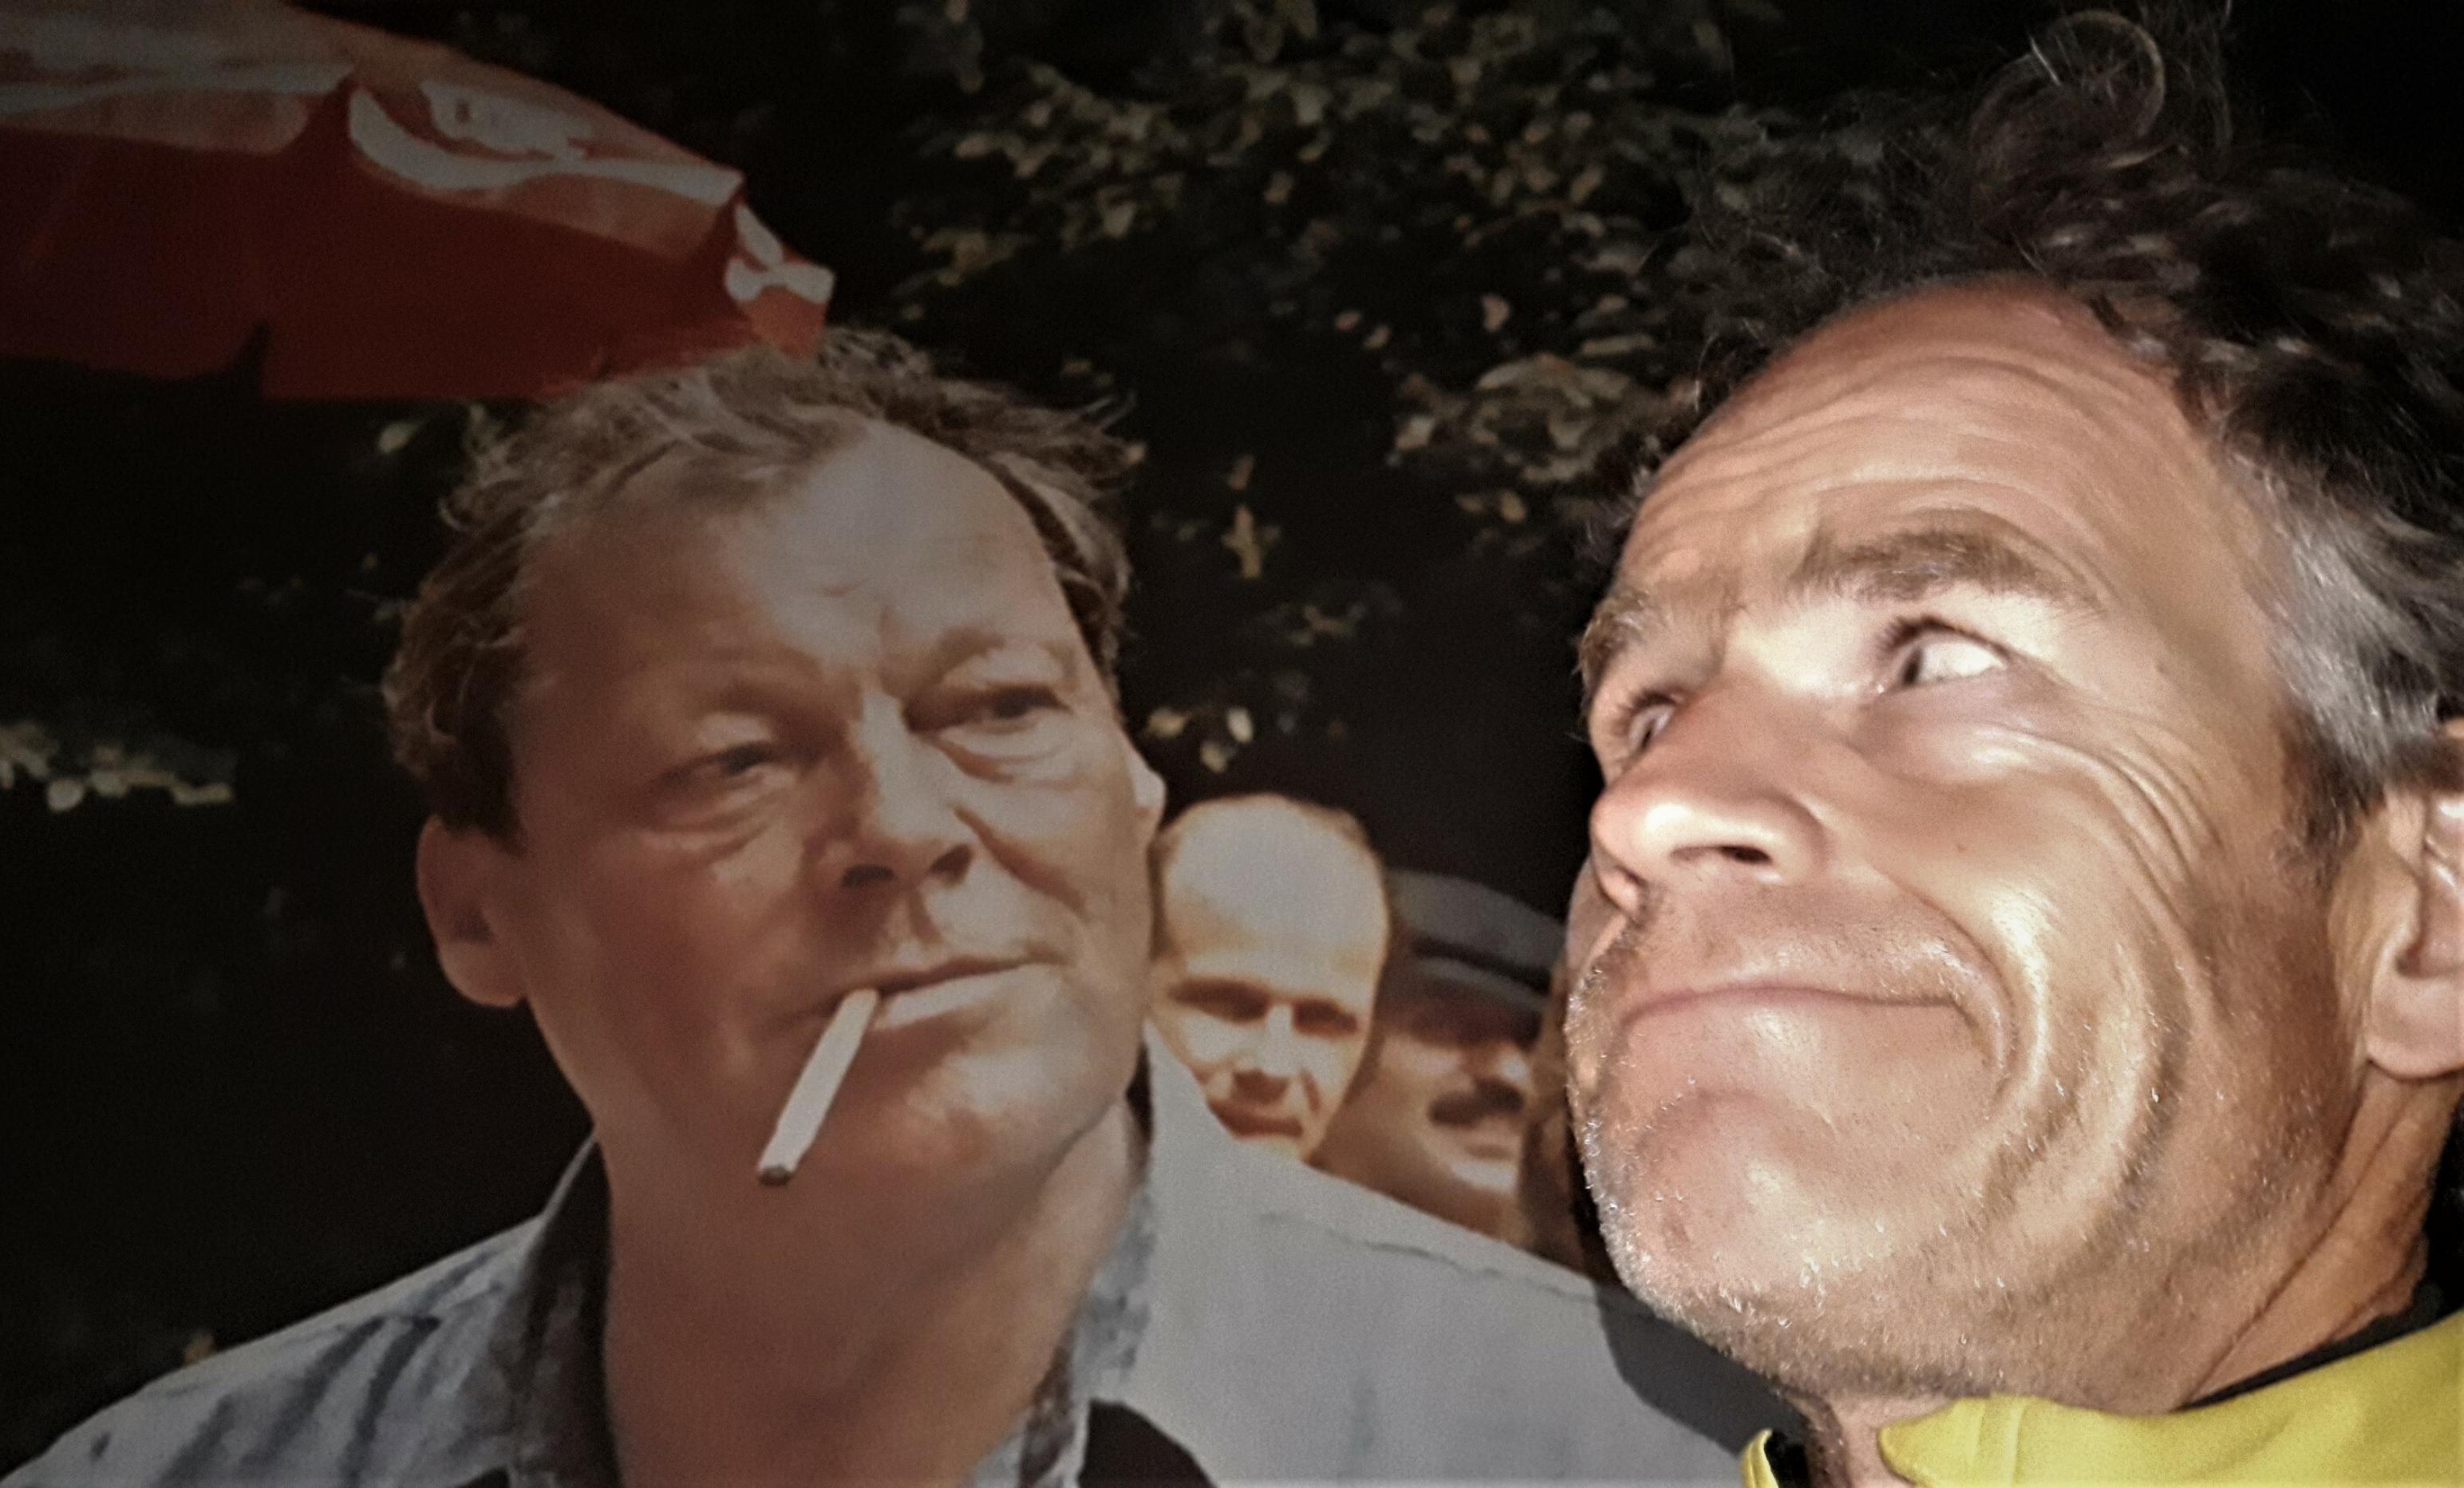 Der 63-jährige Willy Brandt mit Gitarre und Zigarette im Freien; davor der 53-jährige Autor Martin C Roos.